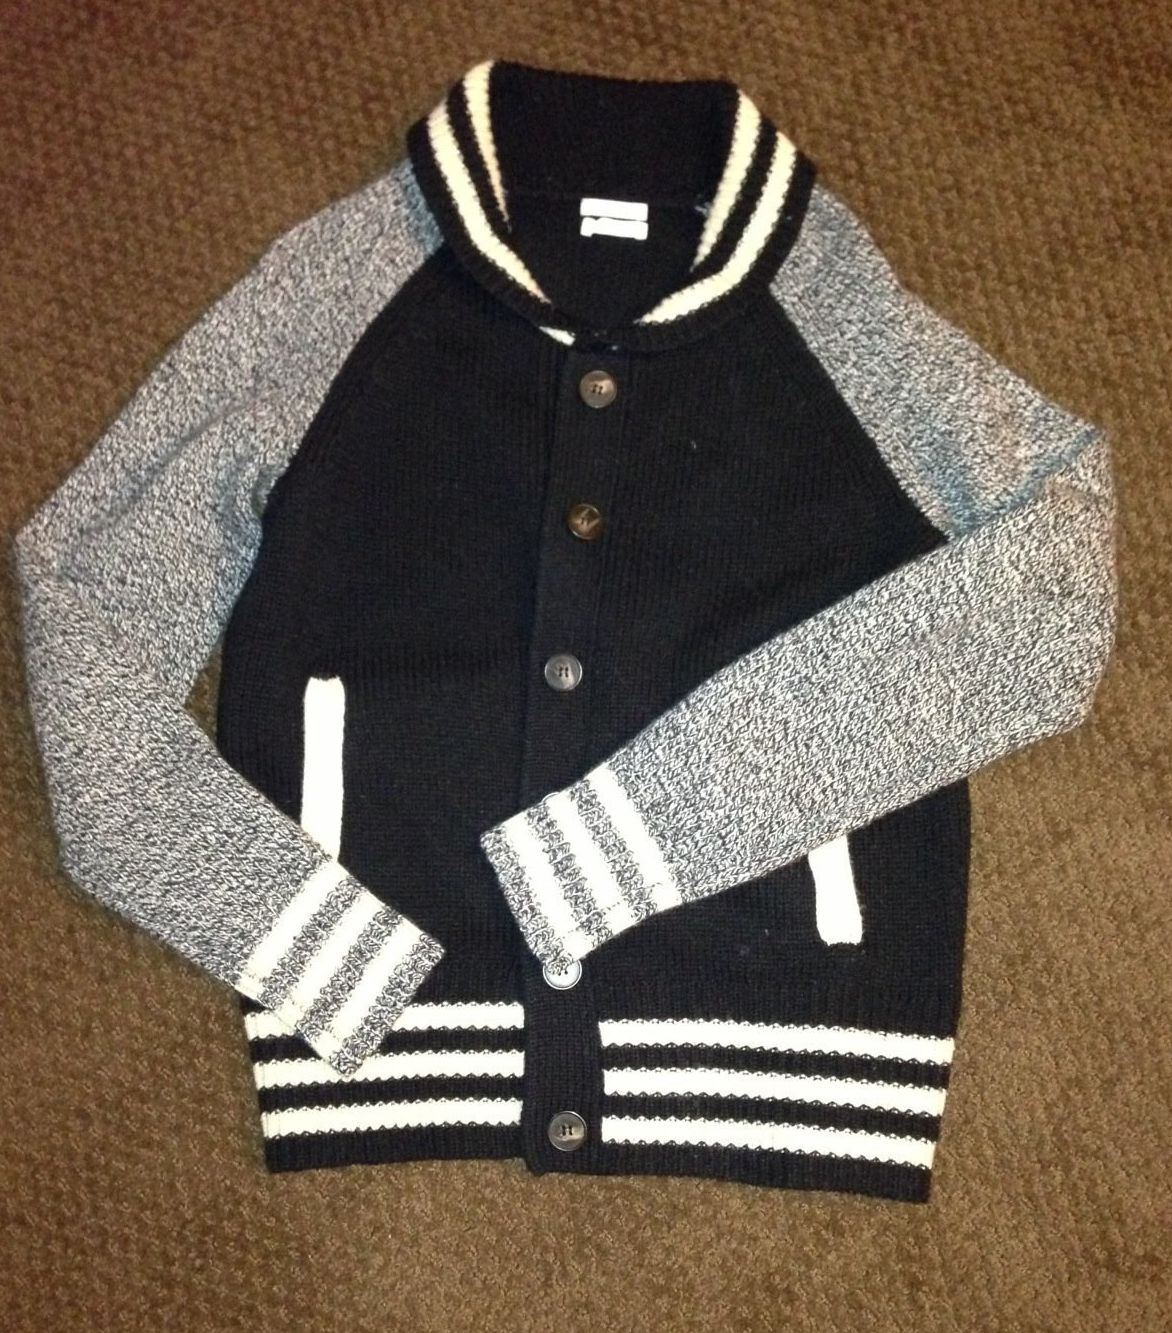 Madewell Letterman Sweater Jacket